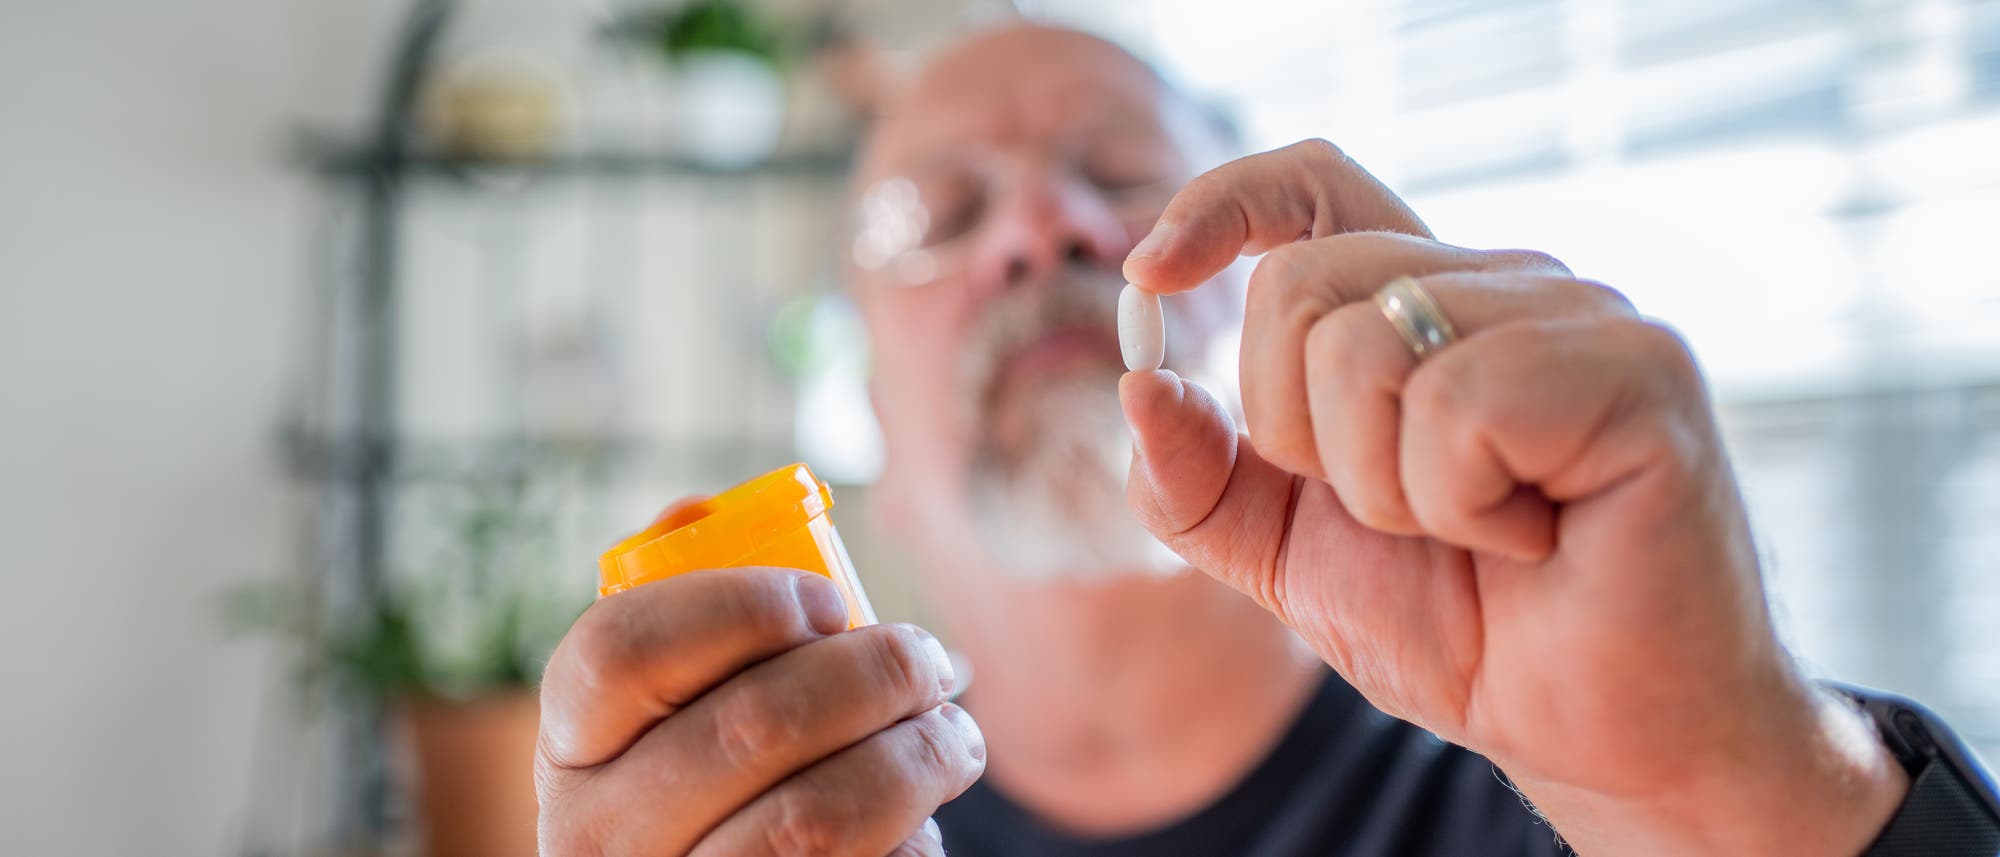 Älterer Mann begutachtet skeptisch eine Pille in seiner linken Hand und hält in der rechten eine Pillendose.